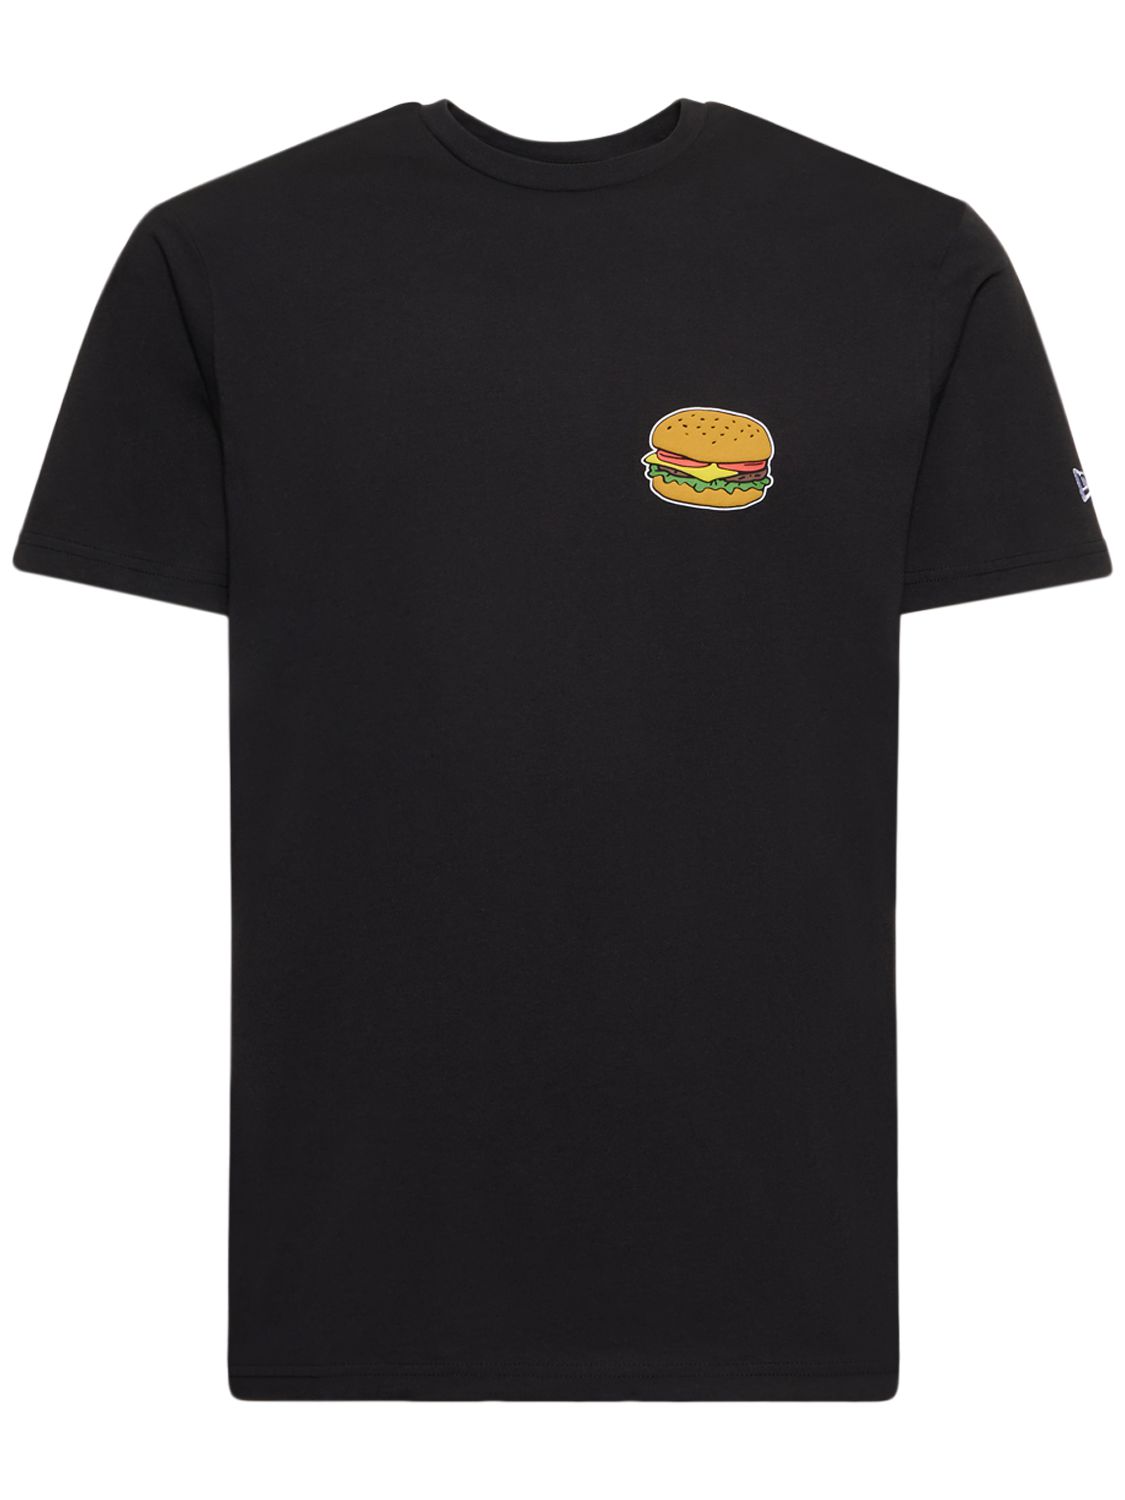 Hamburger Printed Cotton T-shirt